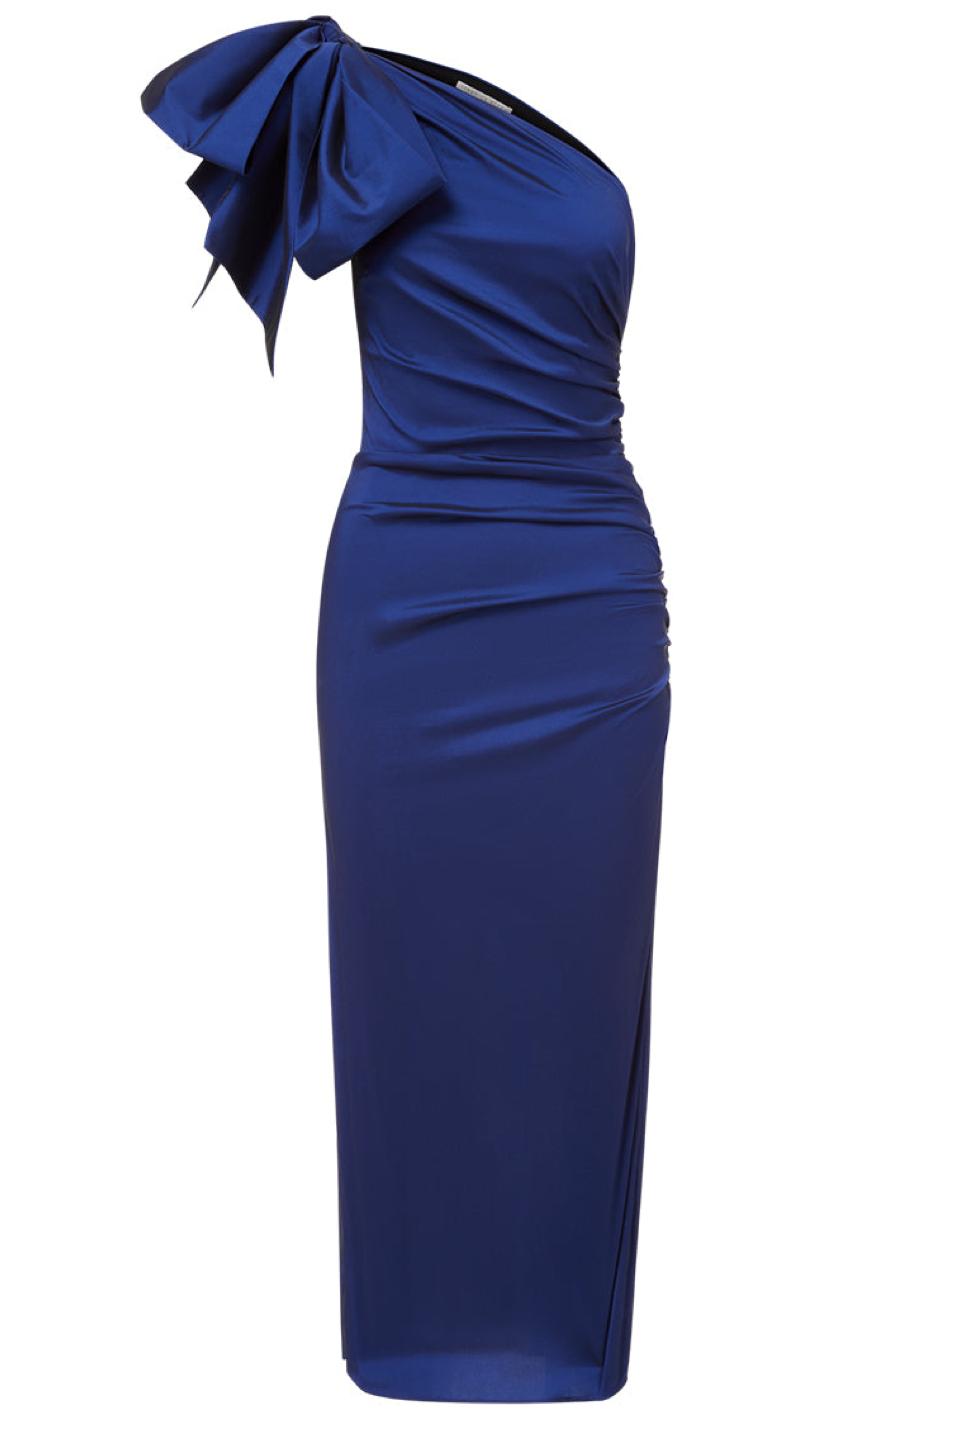 Veronica Beard Belis Dress in Blue | Lyst